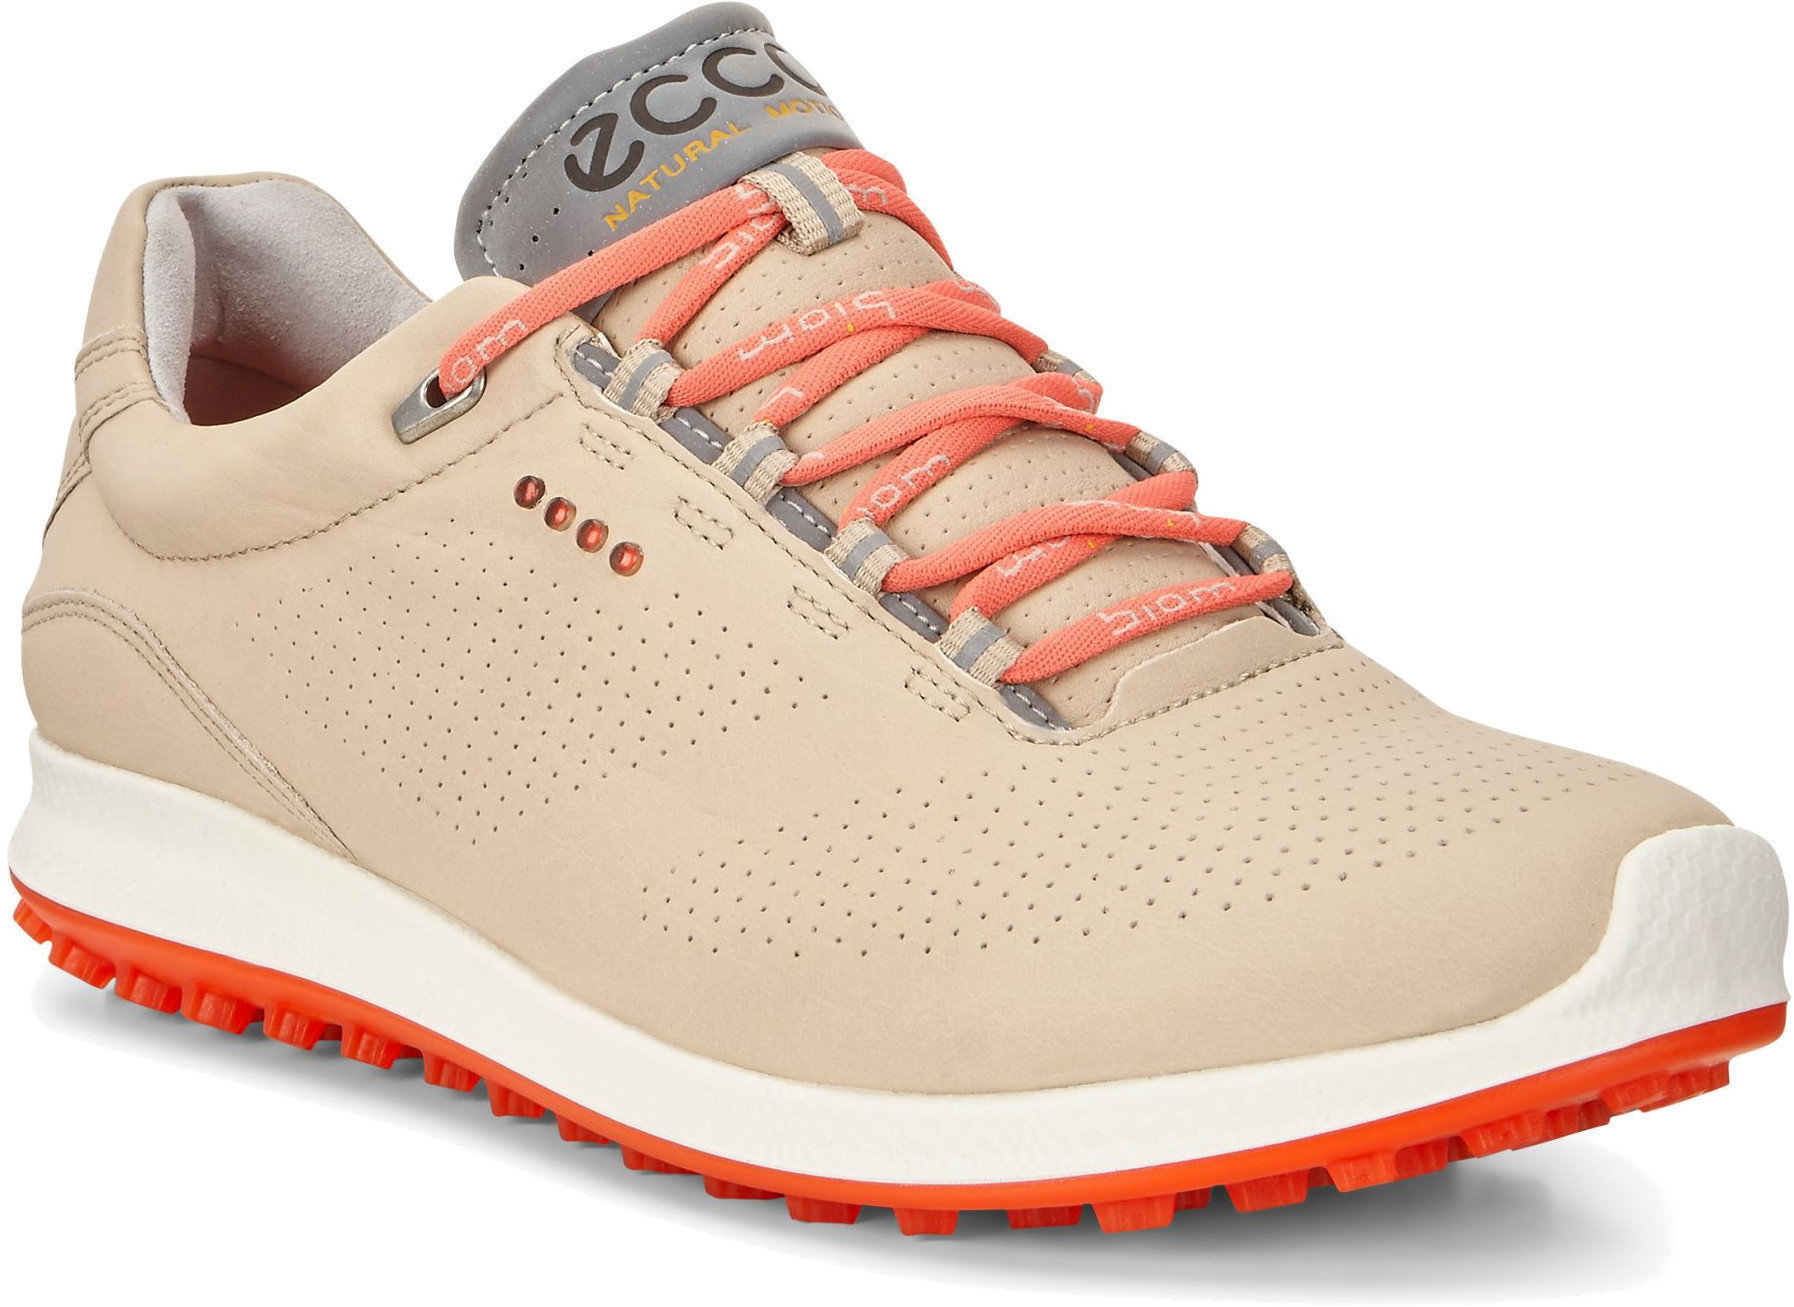 Calzado de golf de mujer Ecco Biom Hybrid 2 Womens Golf Shoes Oyester/Coral Blush 41